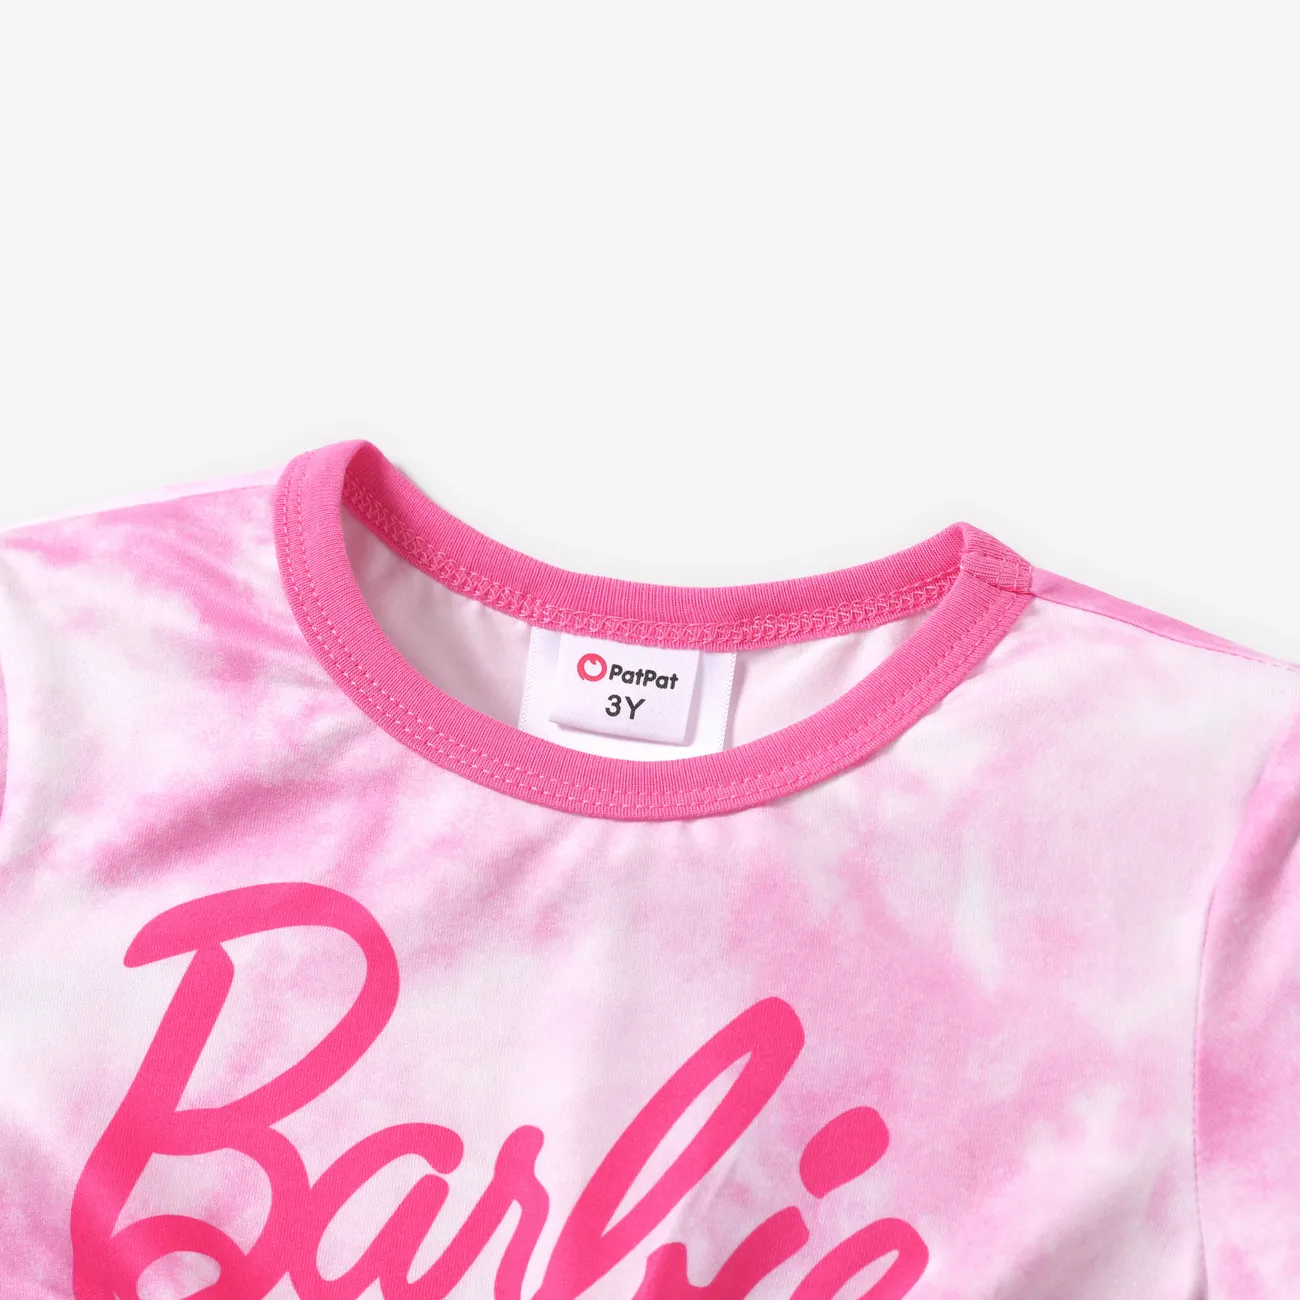 Barbie Fille Entortillé Doux T-Shirt Rose big image 1